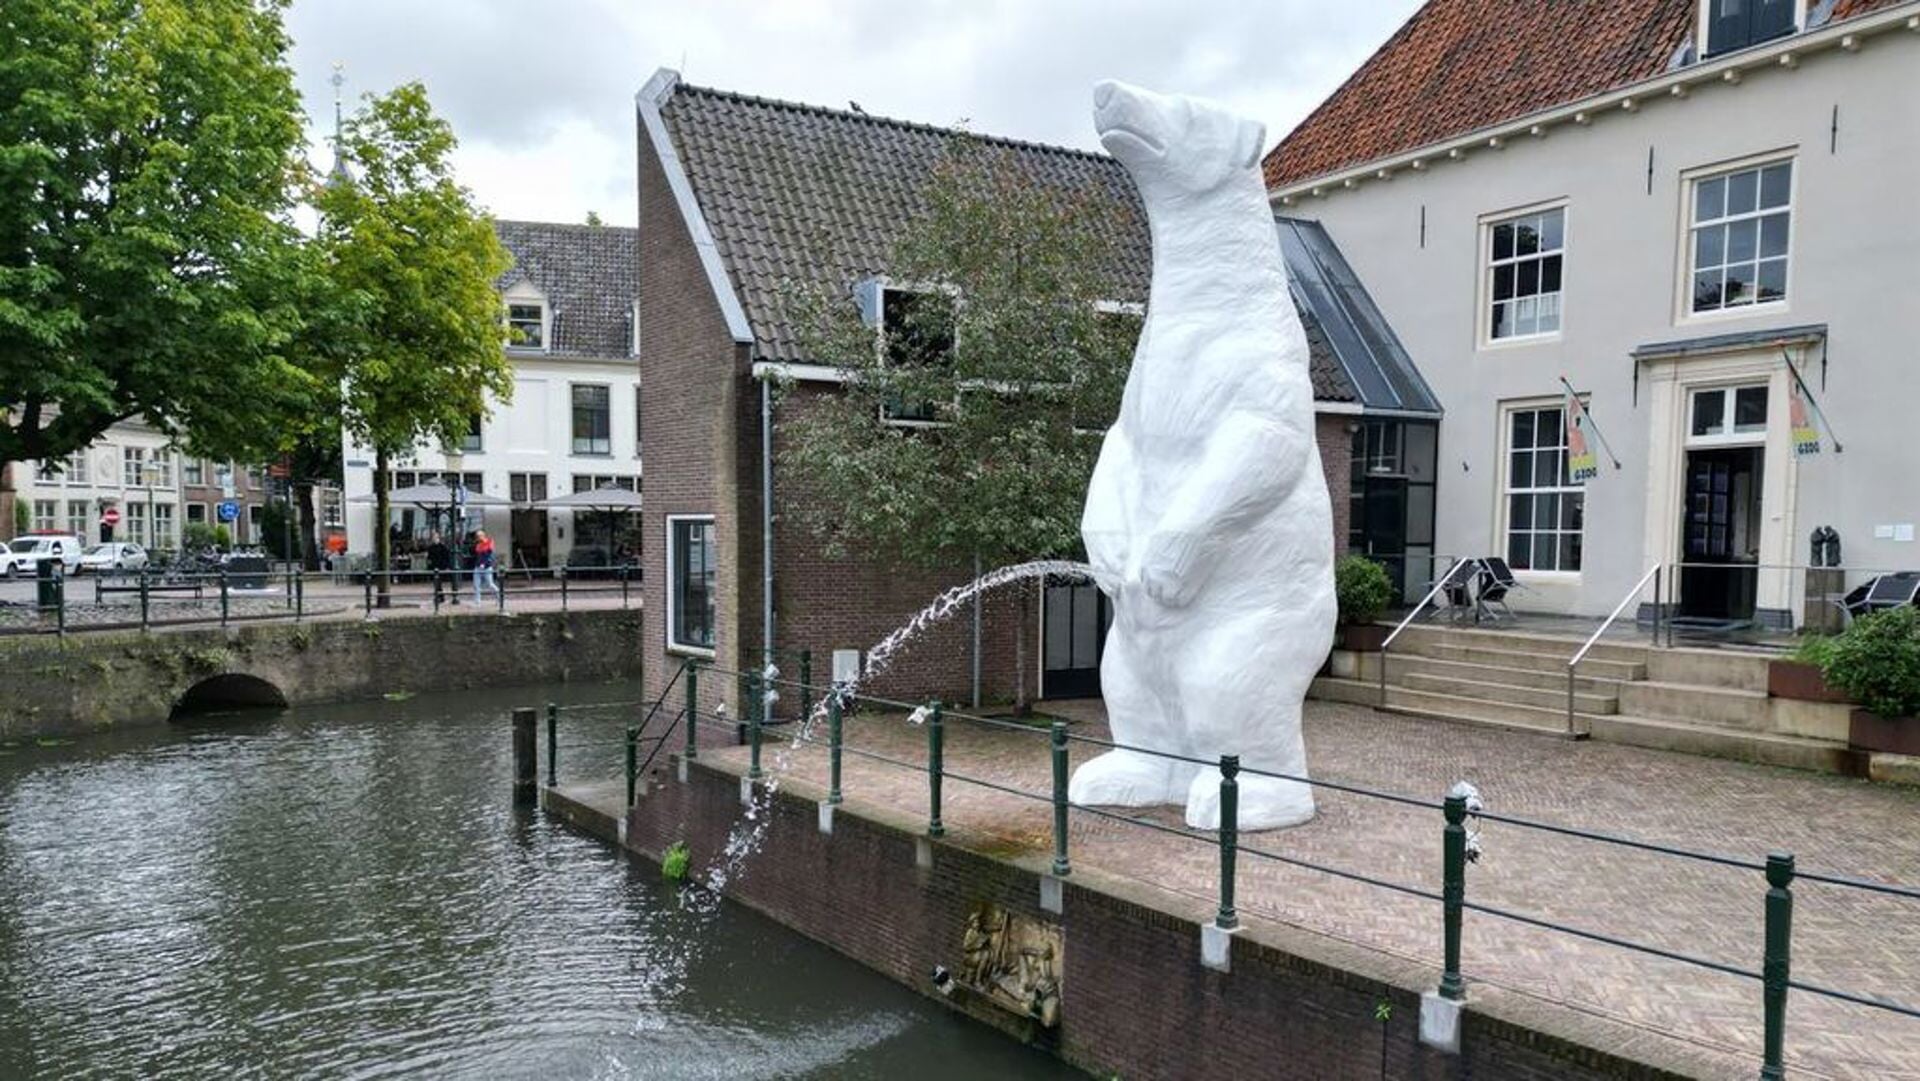 Kunstuitleen Alkmaar wil De Plassende IJsbeer naar Alkmaar halen.